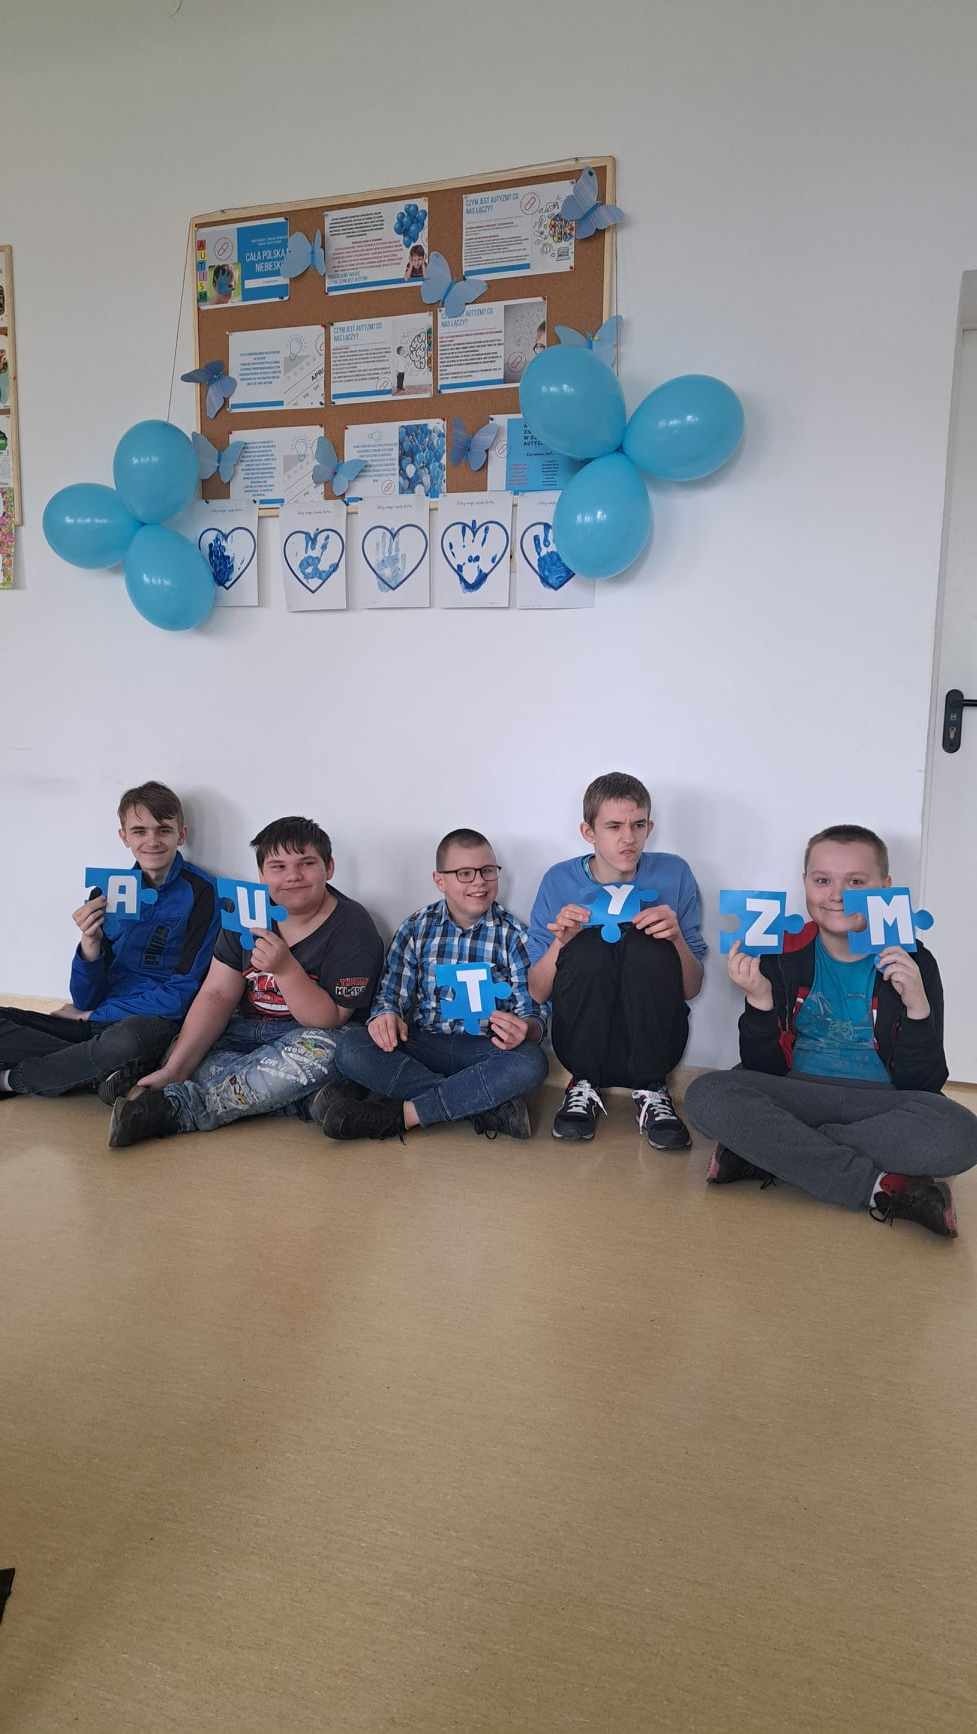 5 uczniów ubranych w elemnty koloru niebieskiego siedzi "po turecku" pod ścianą , w ręku trzymają litery składające się na słowo autyzm - nad ich glowmi wiszą niebieskie balony